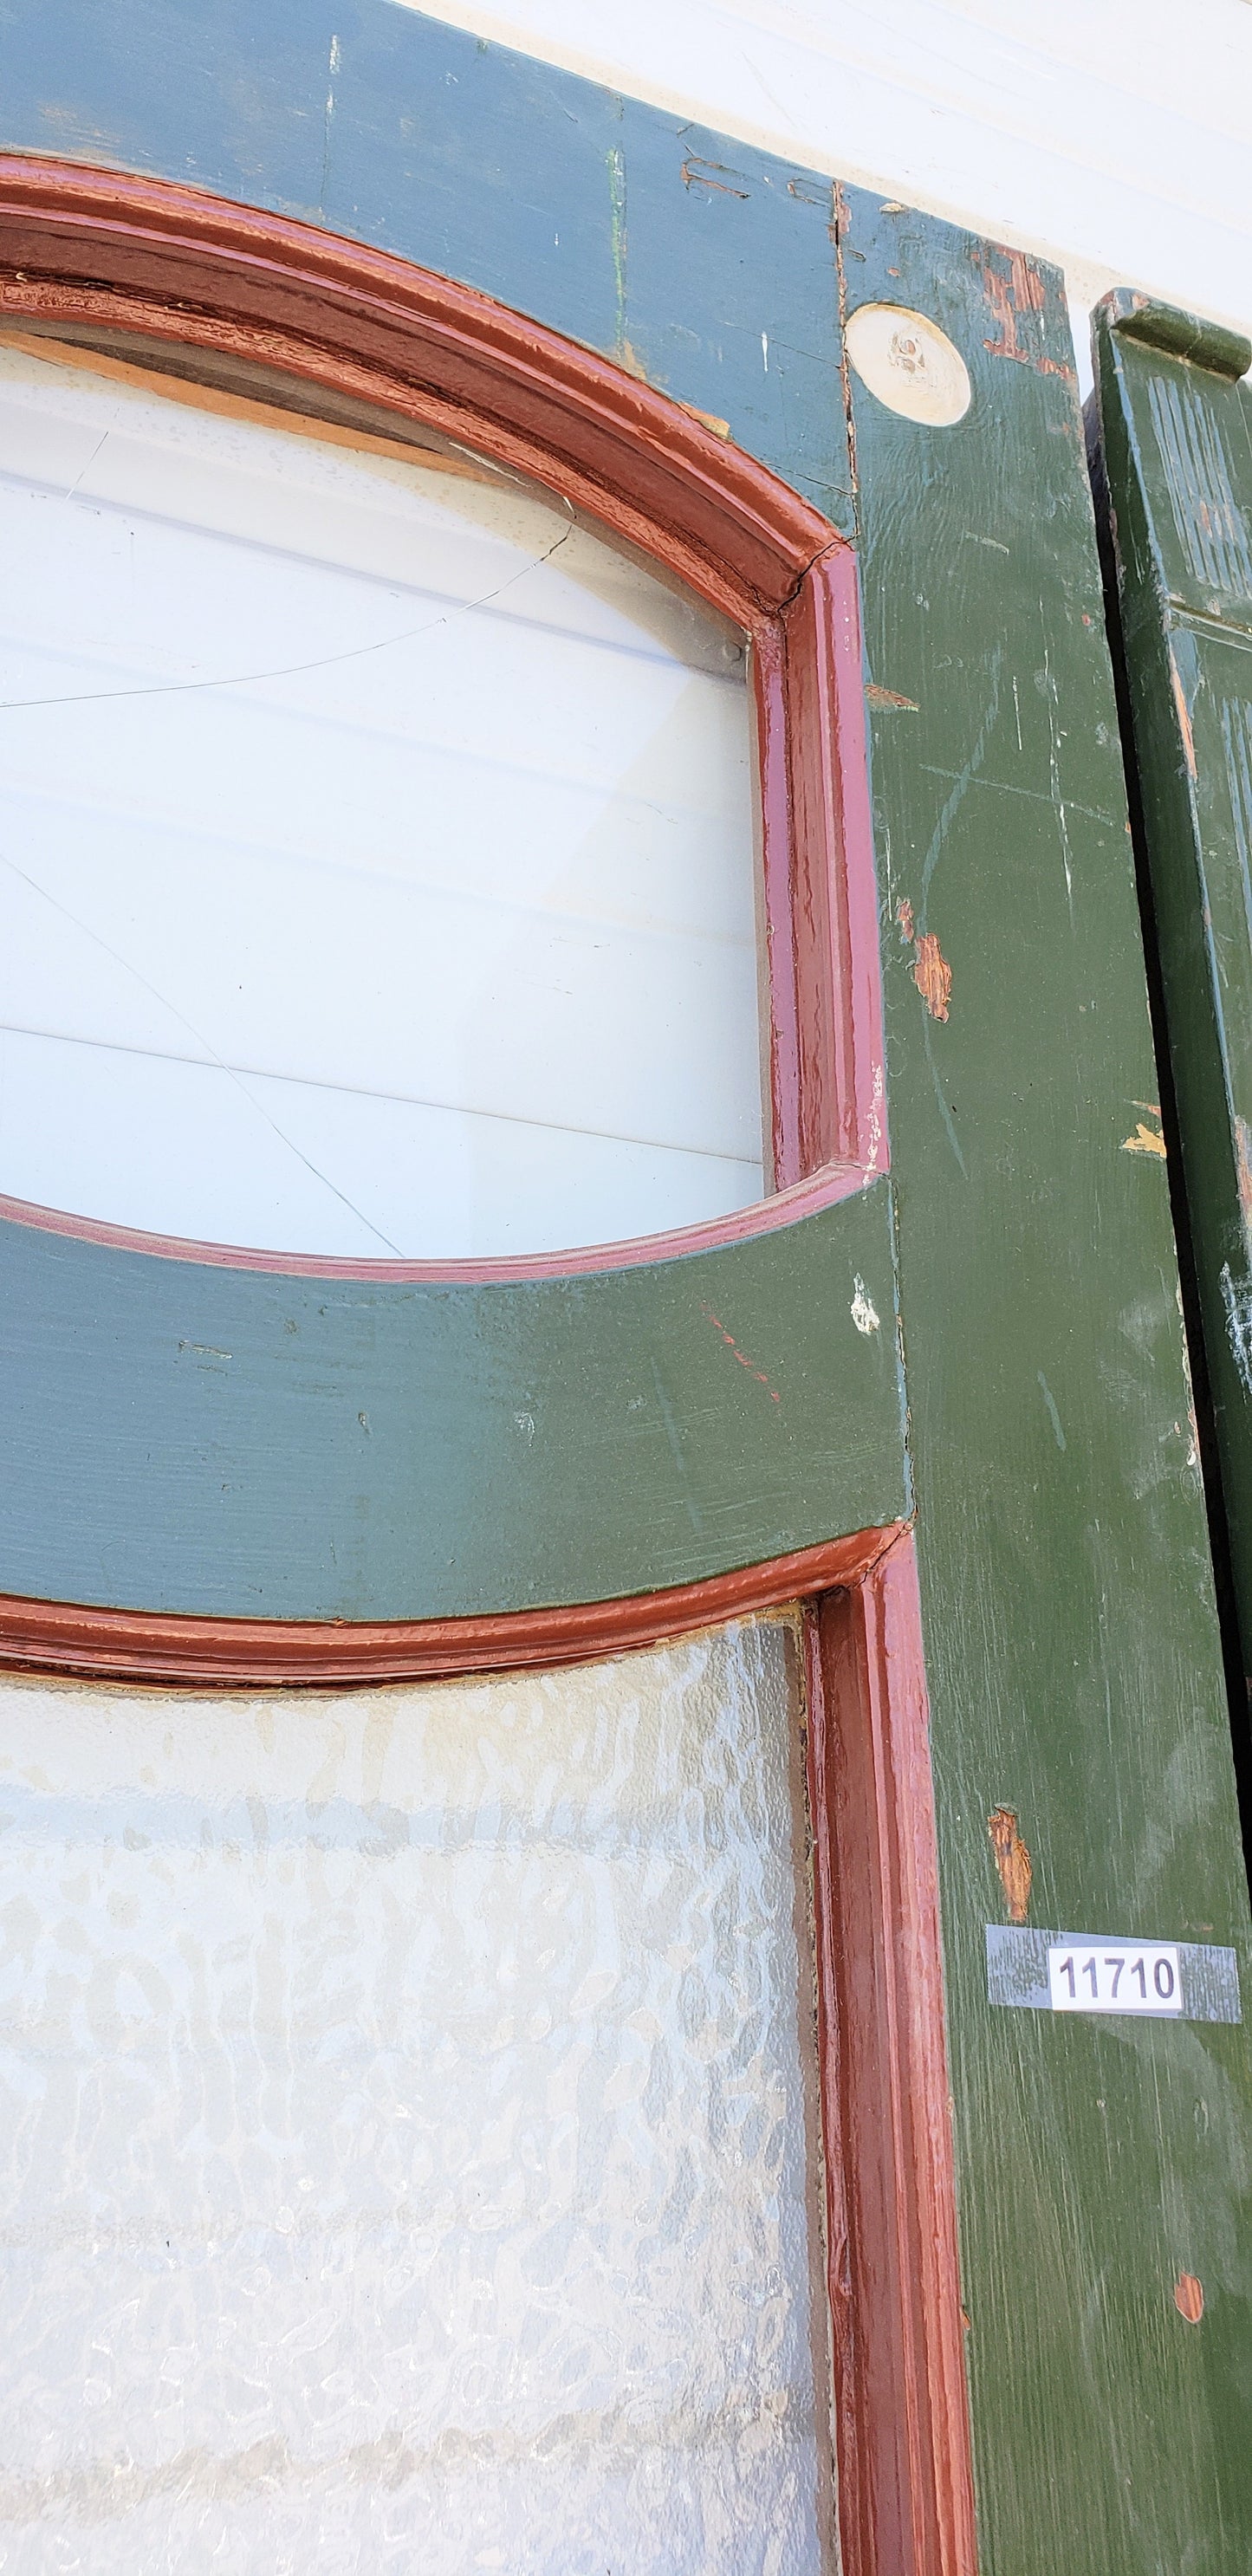 Antique Pair of Painted Wood Doors